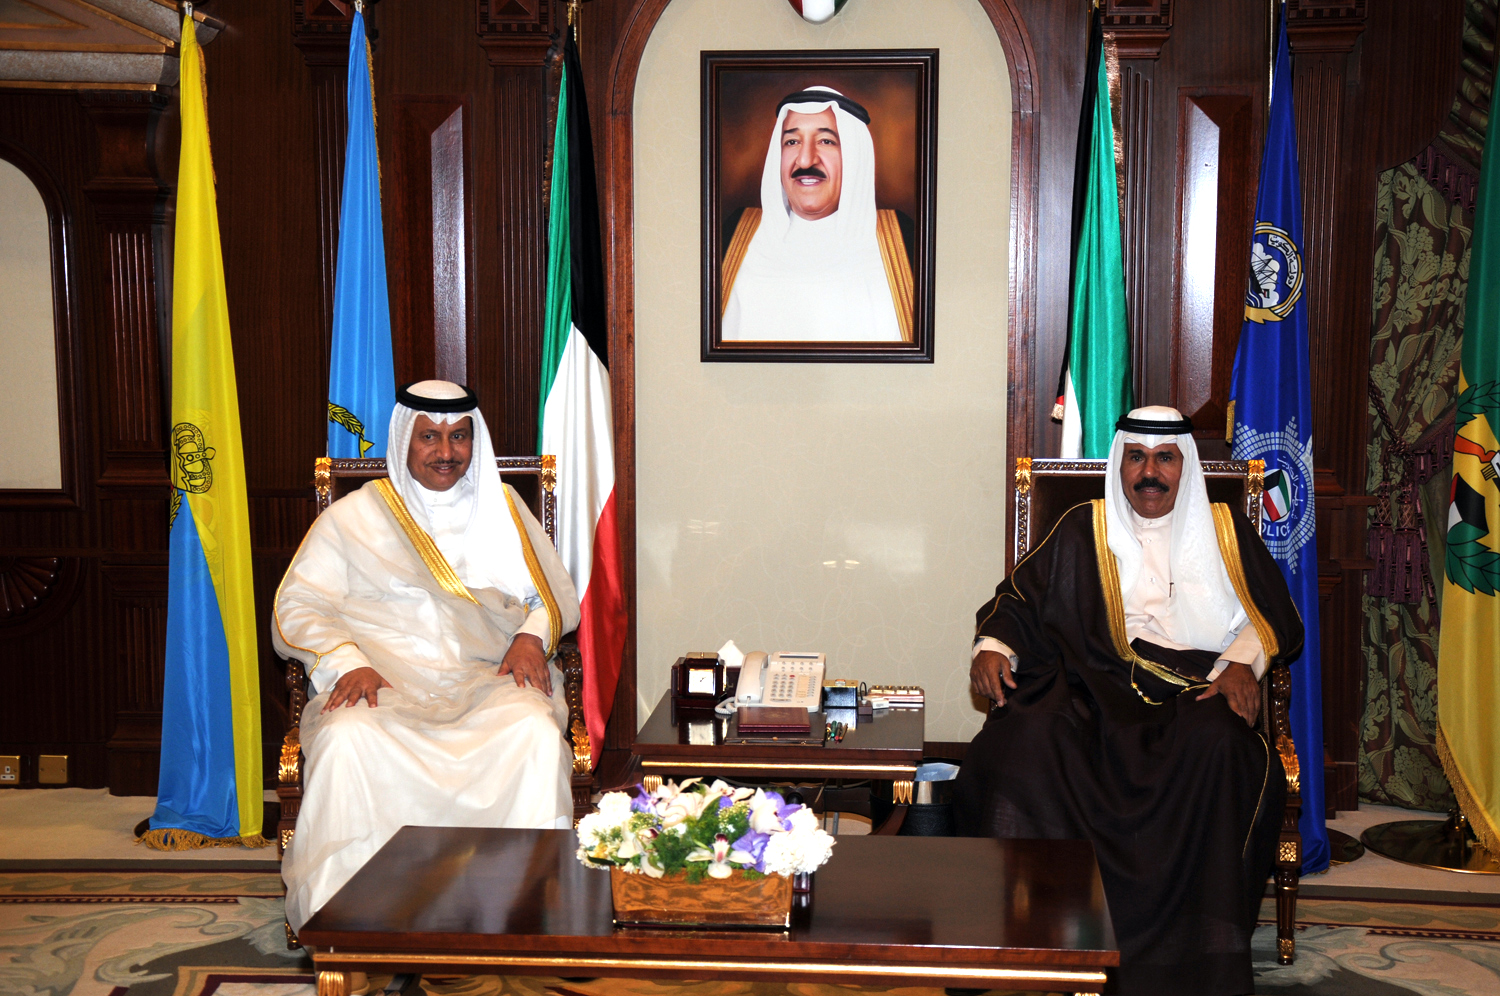 His Highness the Crown Prince Sheikh Nawaf Al-Ahmad Al-Jaber Al-Sabah met His Highness the Prime Minister Sheikh Jaber Al-Mubarak Al-Hamad Al-Sabah